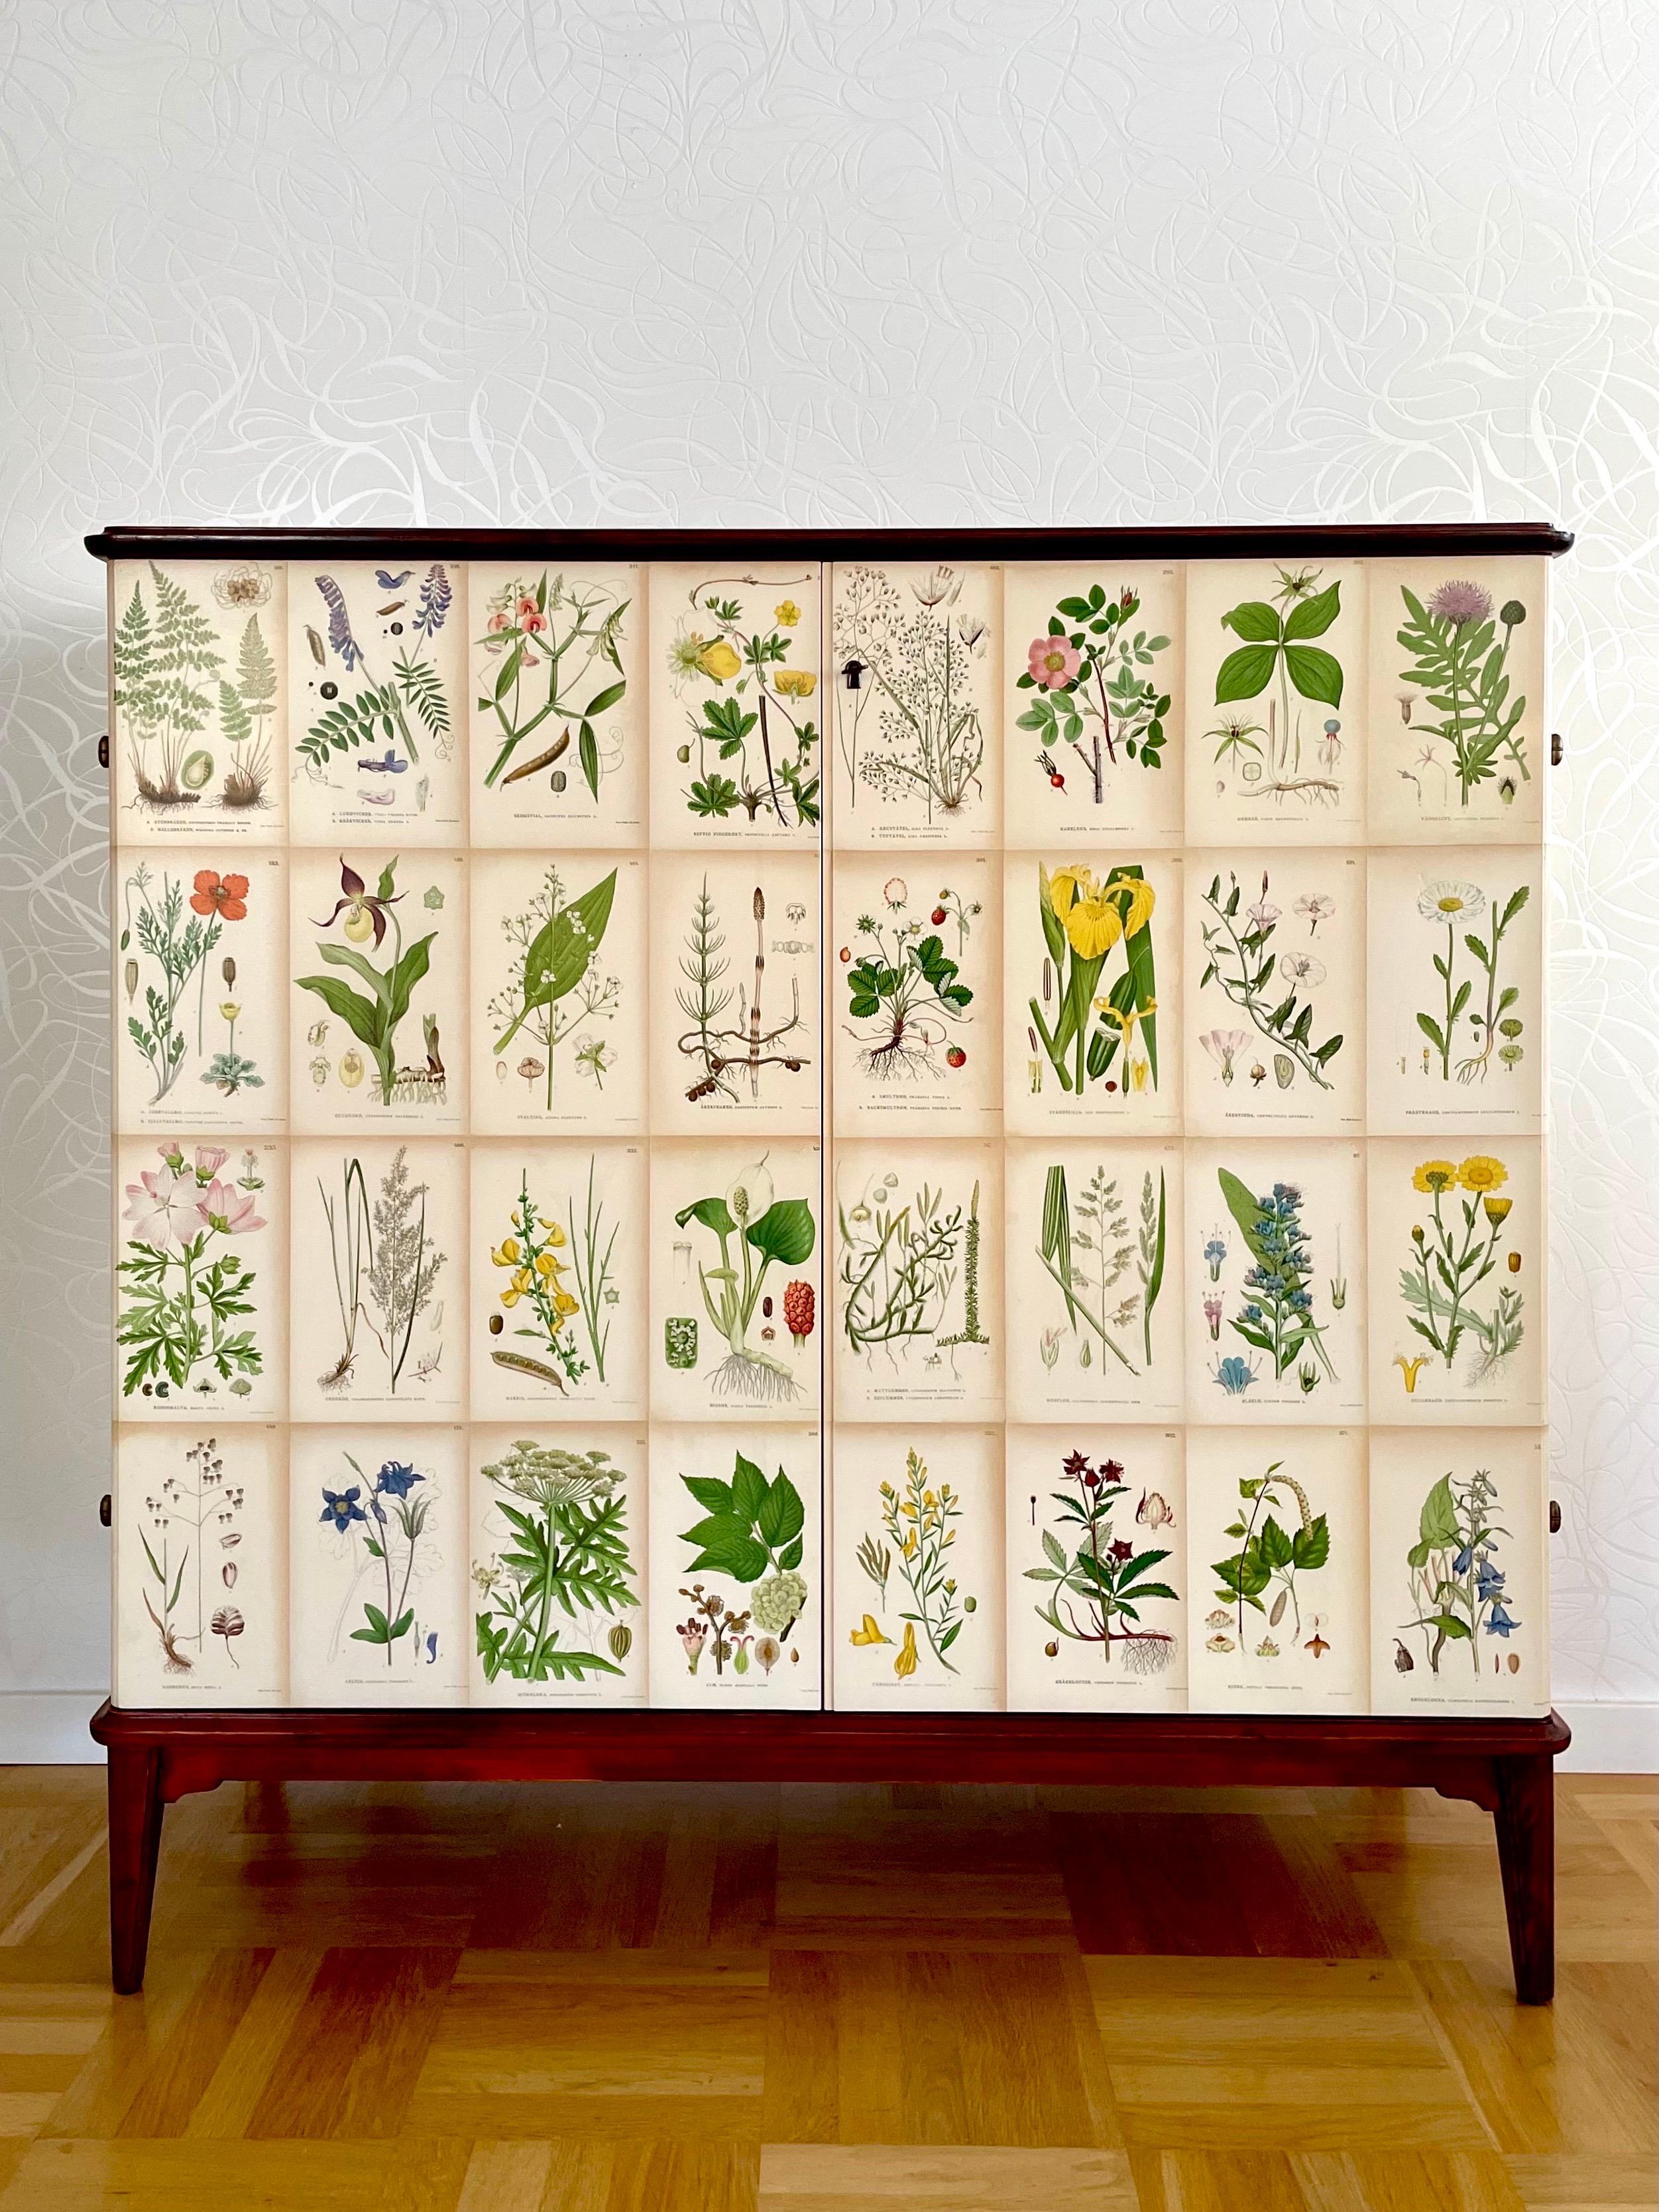 Il s'agit d'une armoire moderne suédoise en mahogny fabriquée en 1954. Le cabinet a été ultérieurement décoré dans le style de Josef Franks avec des lithographies de fleurs anciennes. 

Elle est livrée avec un plateau en placage d'acajou verni. 
Les